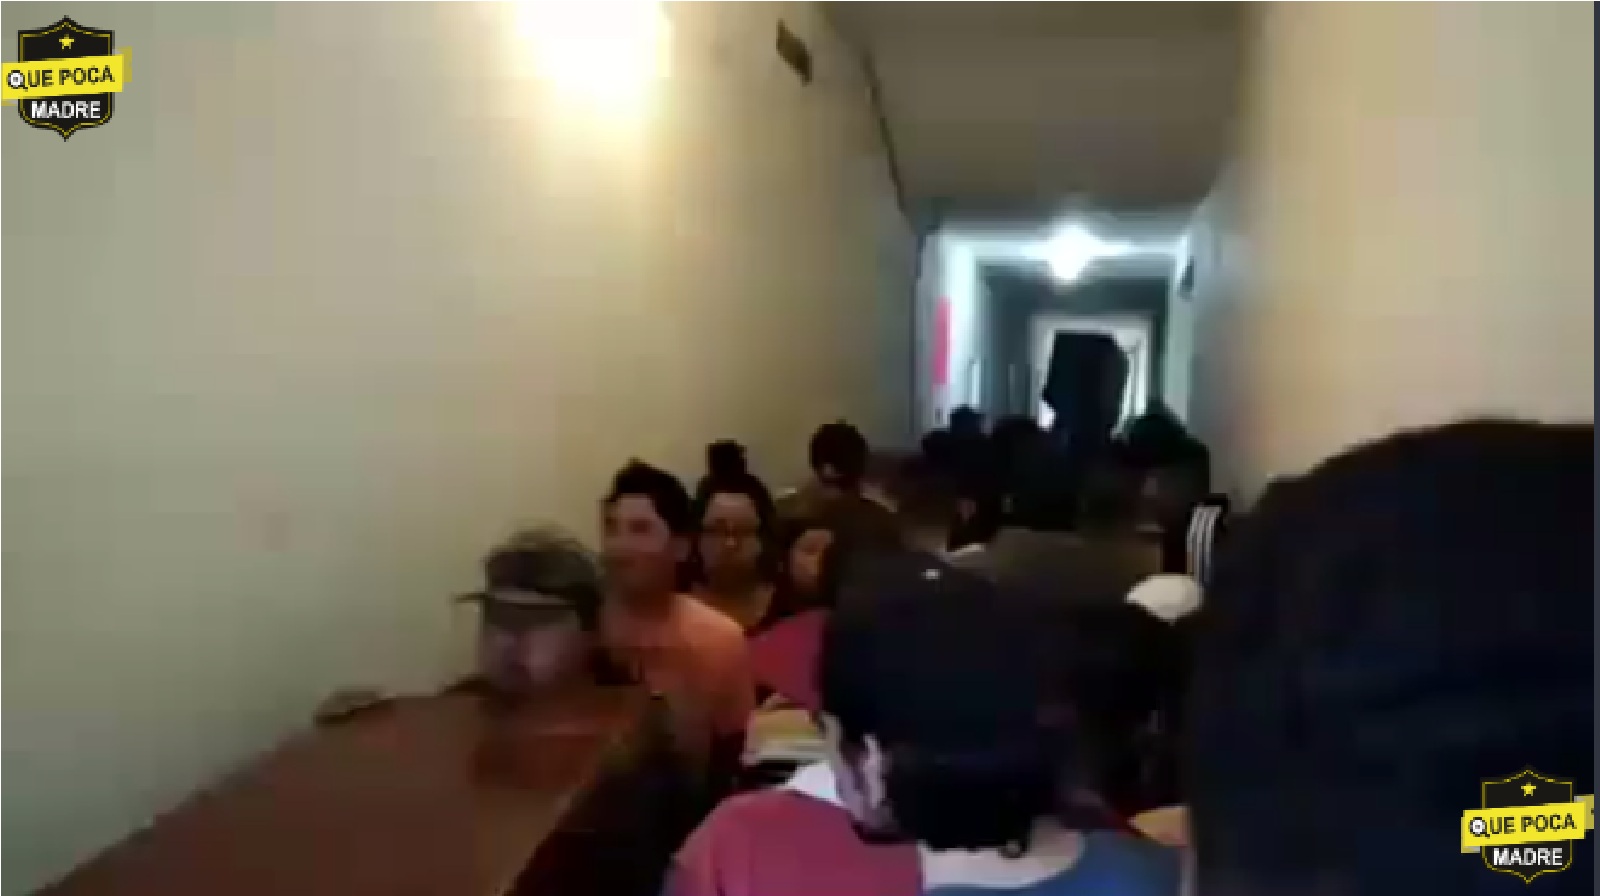 Video: Captan saqueo múltiple de departamentos como parte de un supuesto desalojo en un edificio con más de 50 departamentos en San Antonio Abad